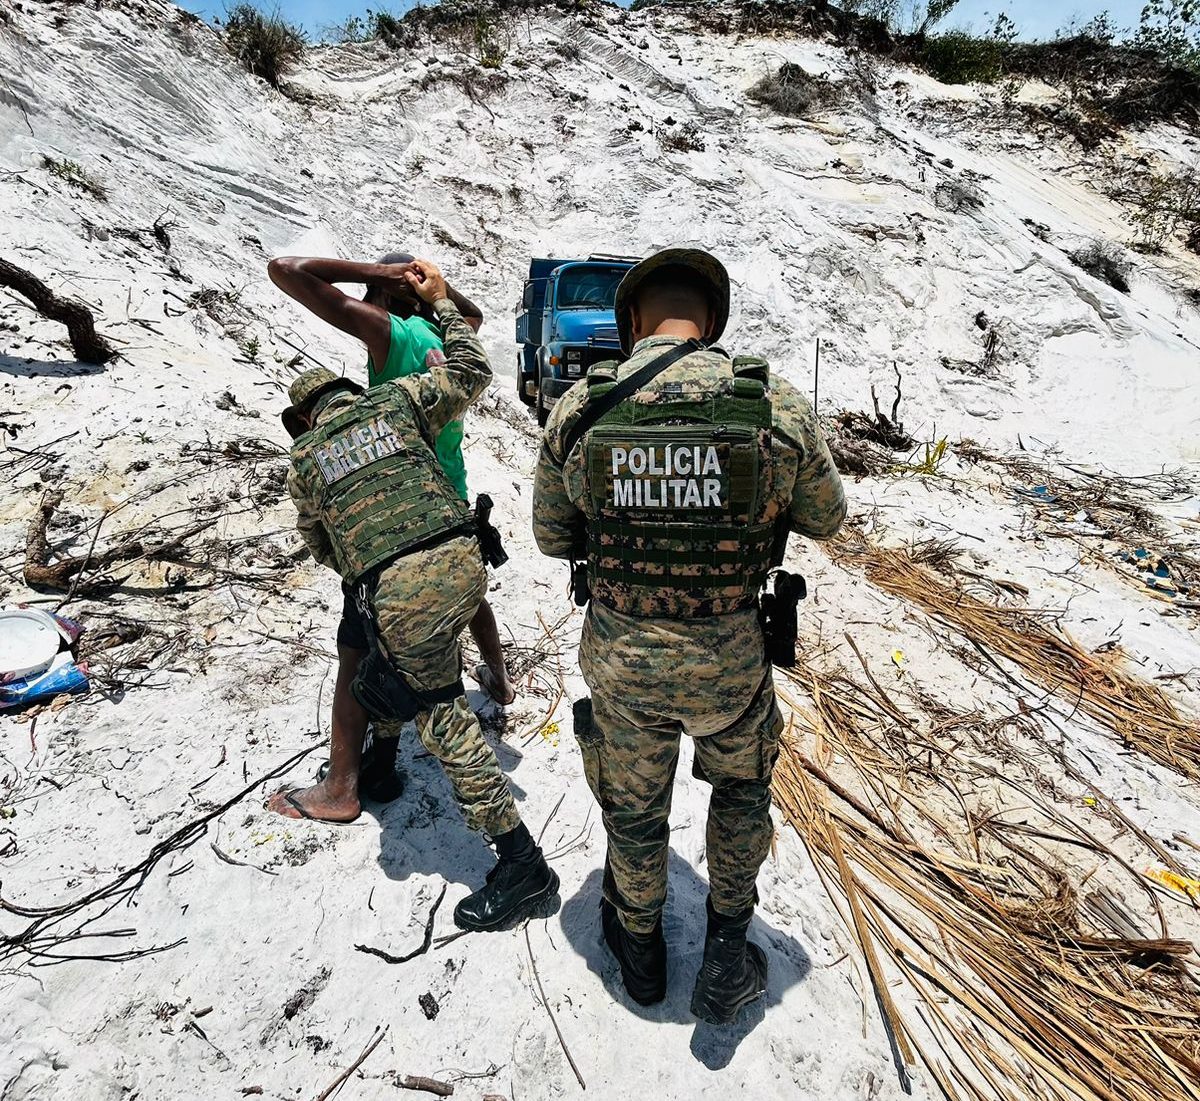 Homens são presos em extração ilegal de minério em Jauá